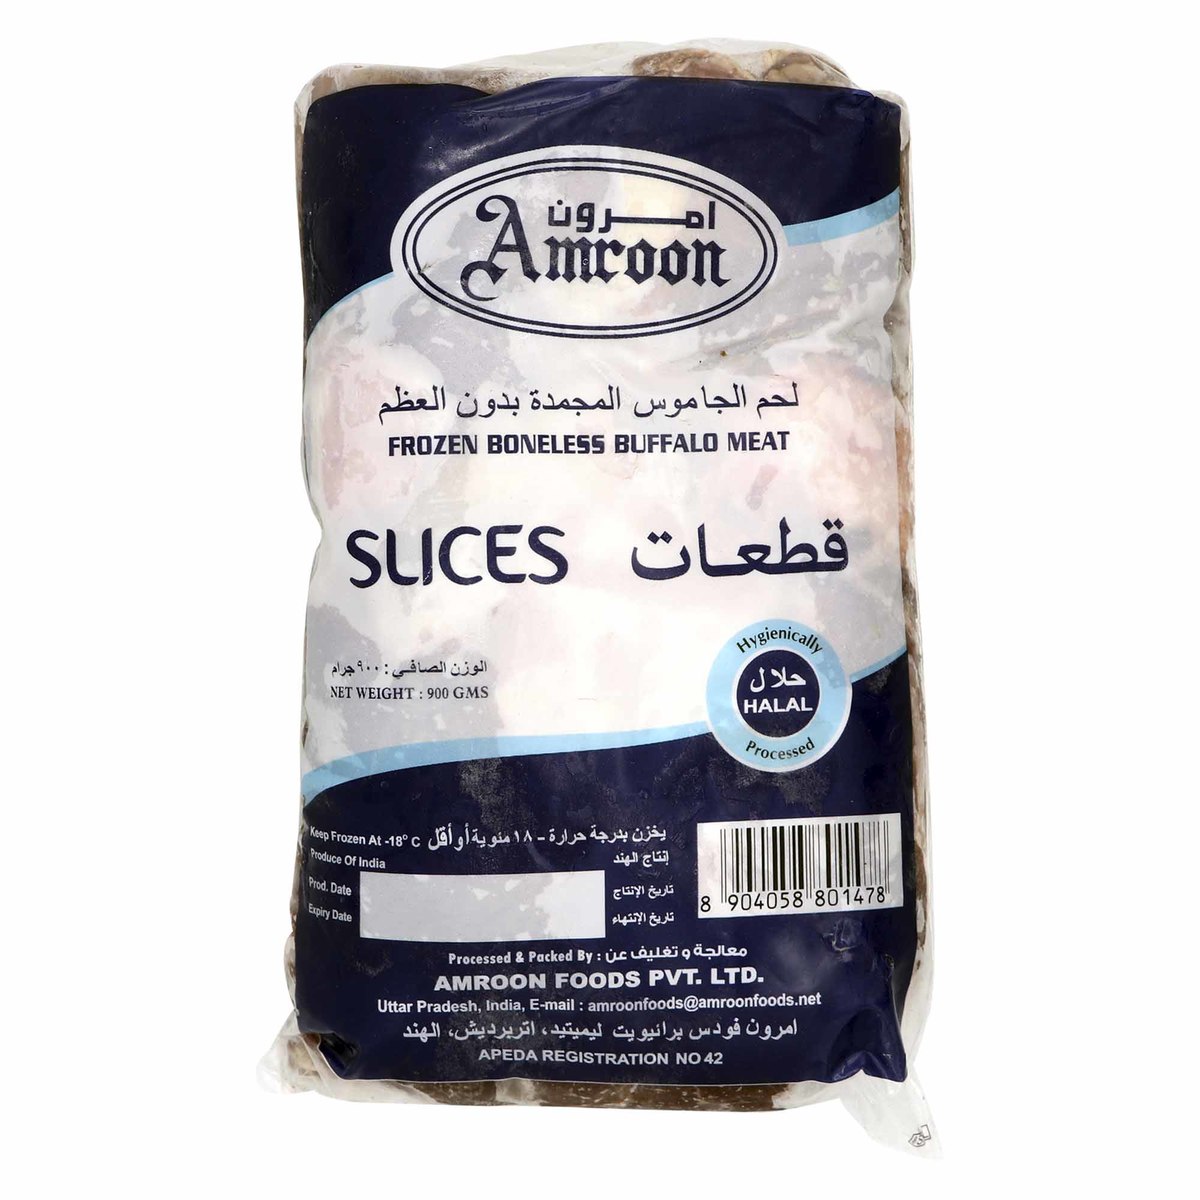 Amroon Frozen Boneless Buffalo Meat Slices 900g